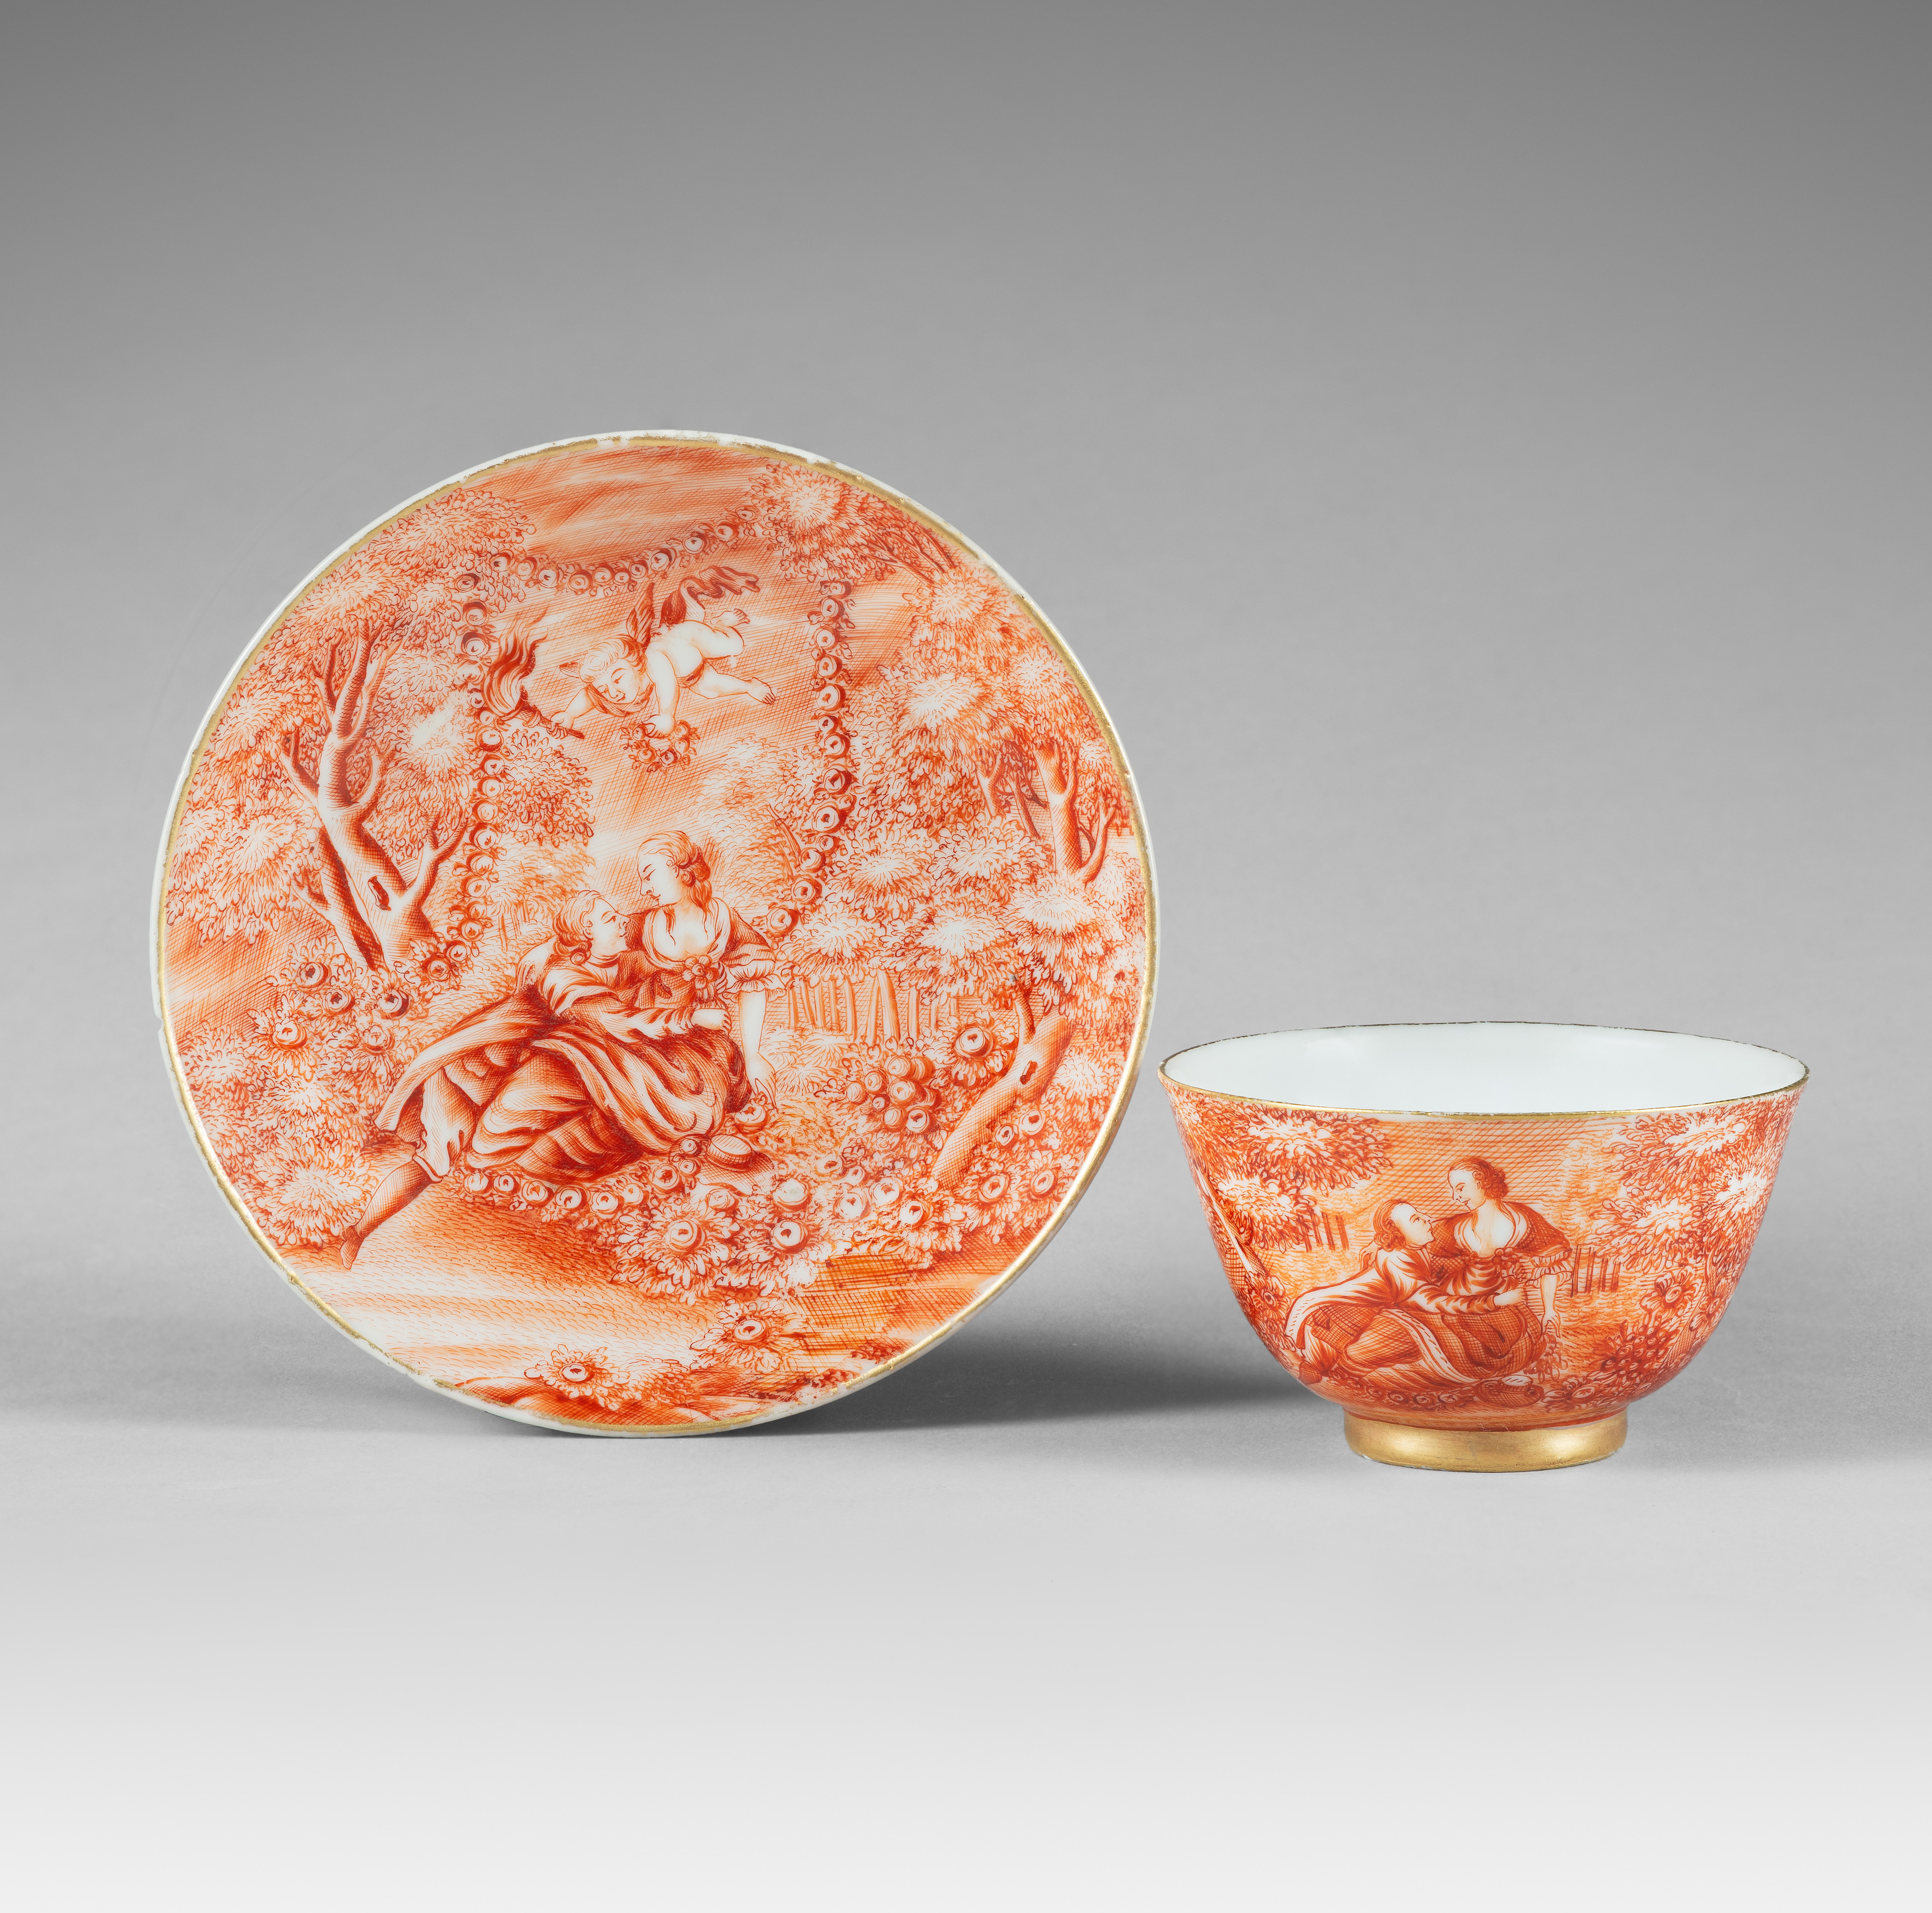 Porcelain Qianlong period (1736-1795), ca. 1766-1770, China